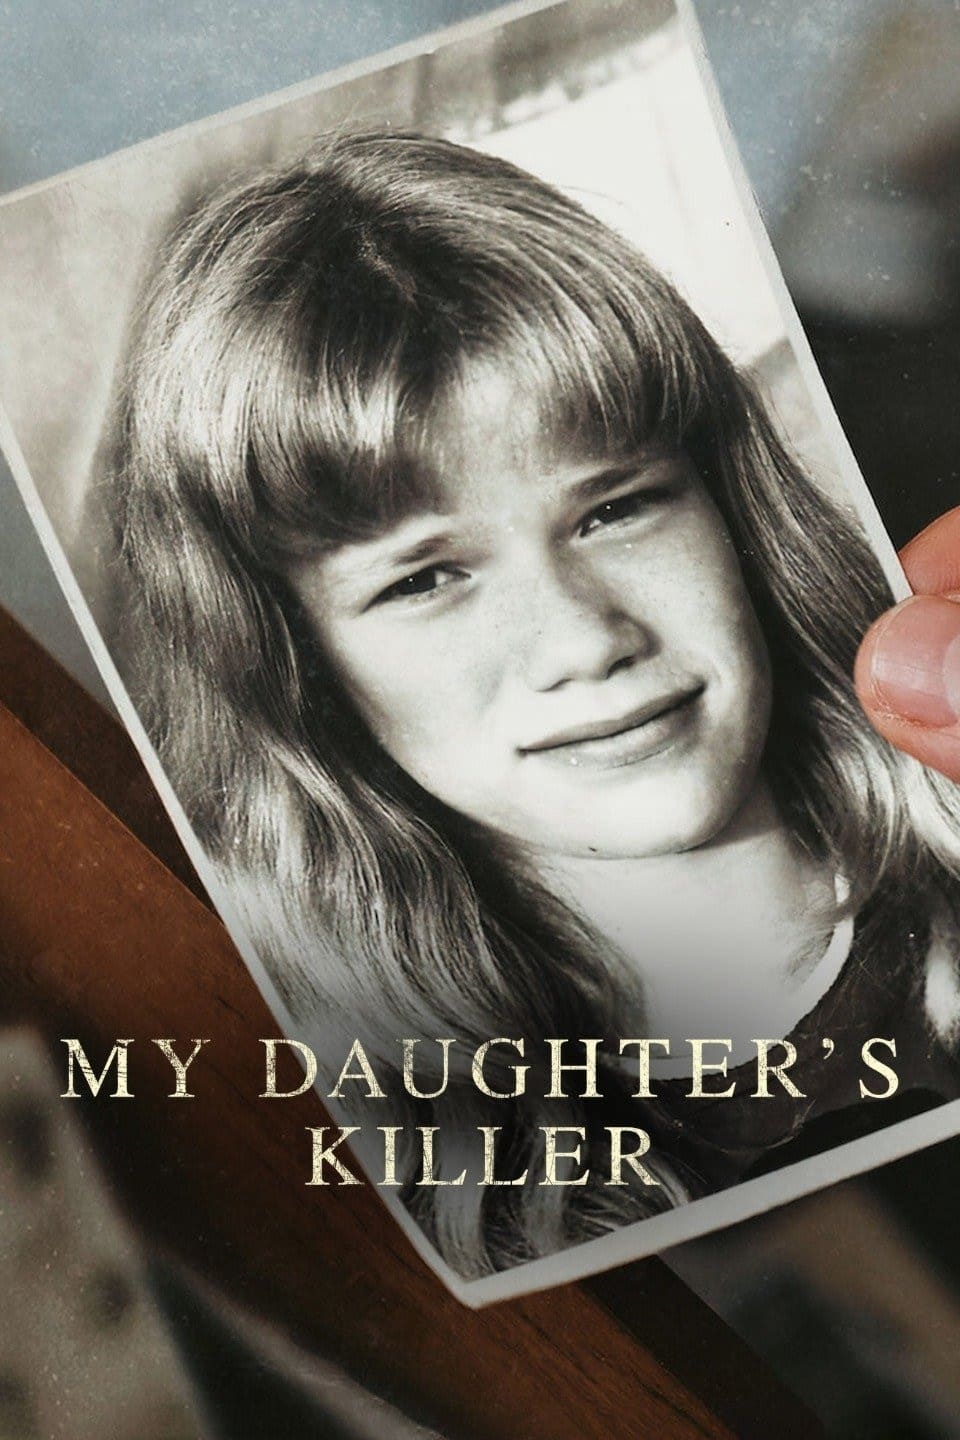 O Assassino da Minha Filha